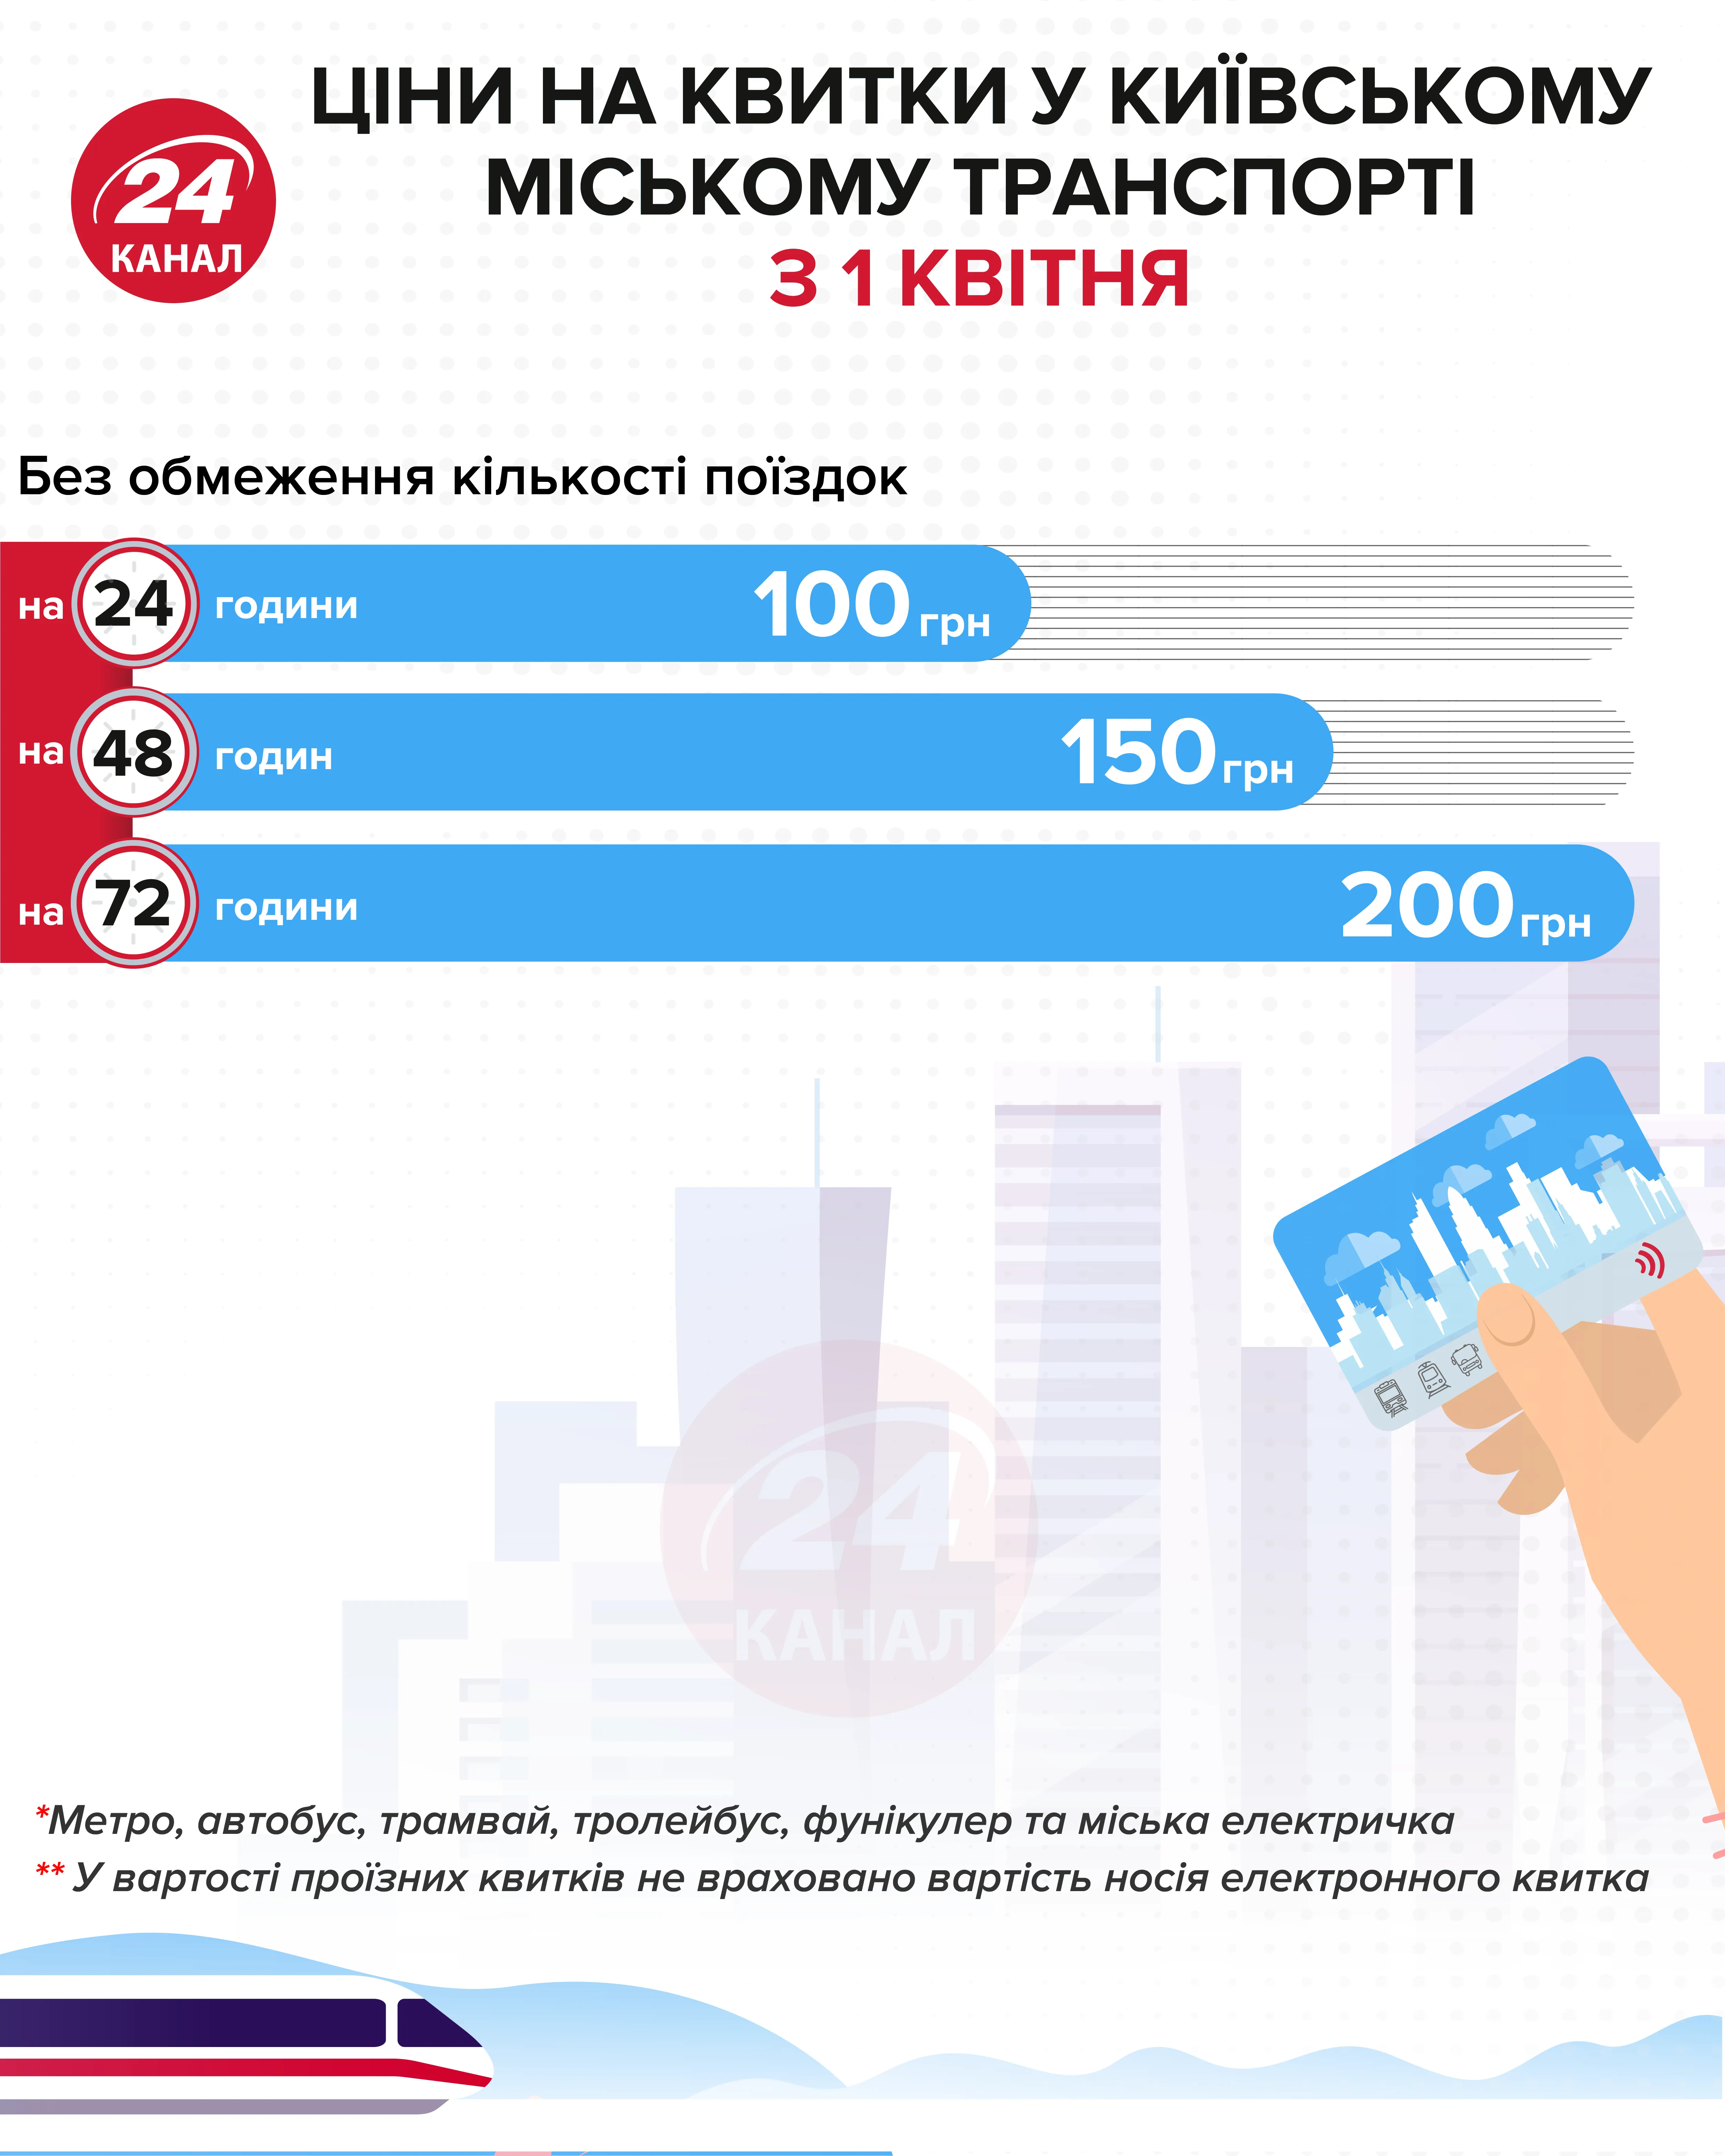 Цены на билеты в городском транспорте Киева Инфографика 24 канала